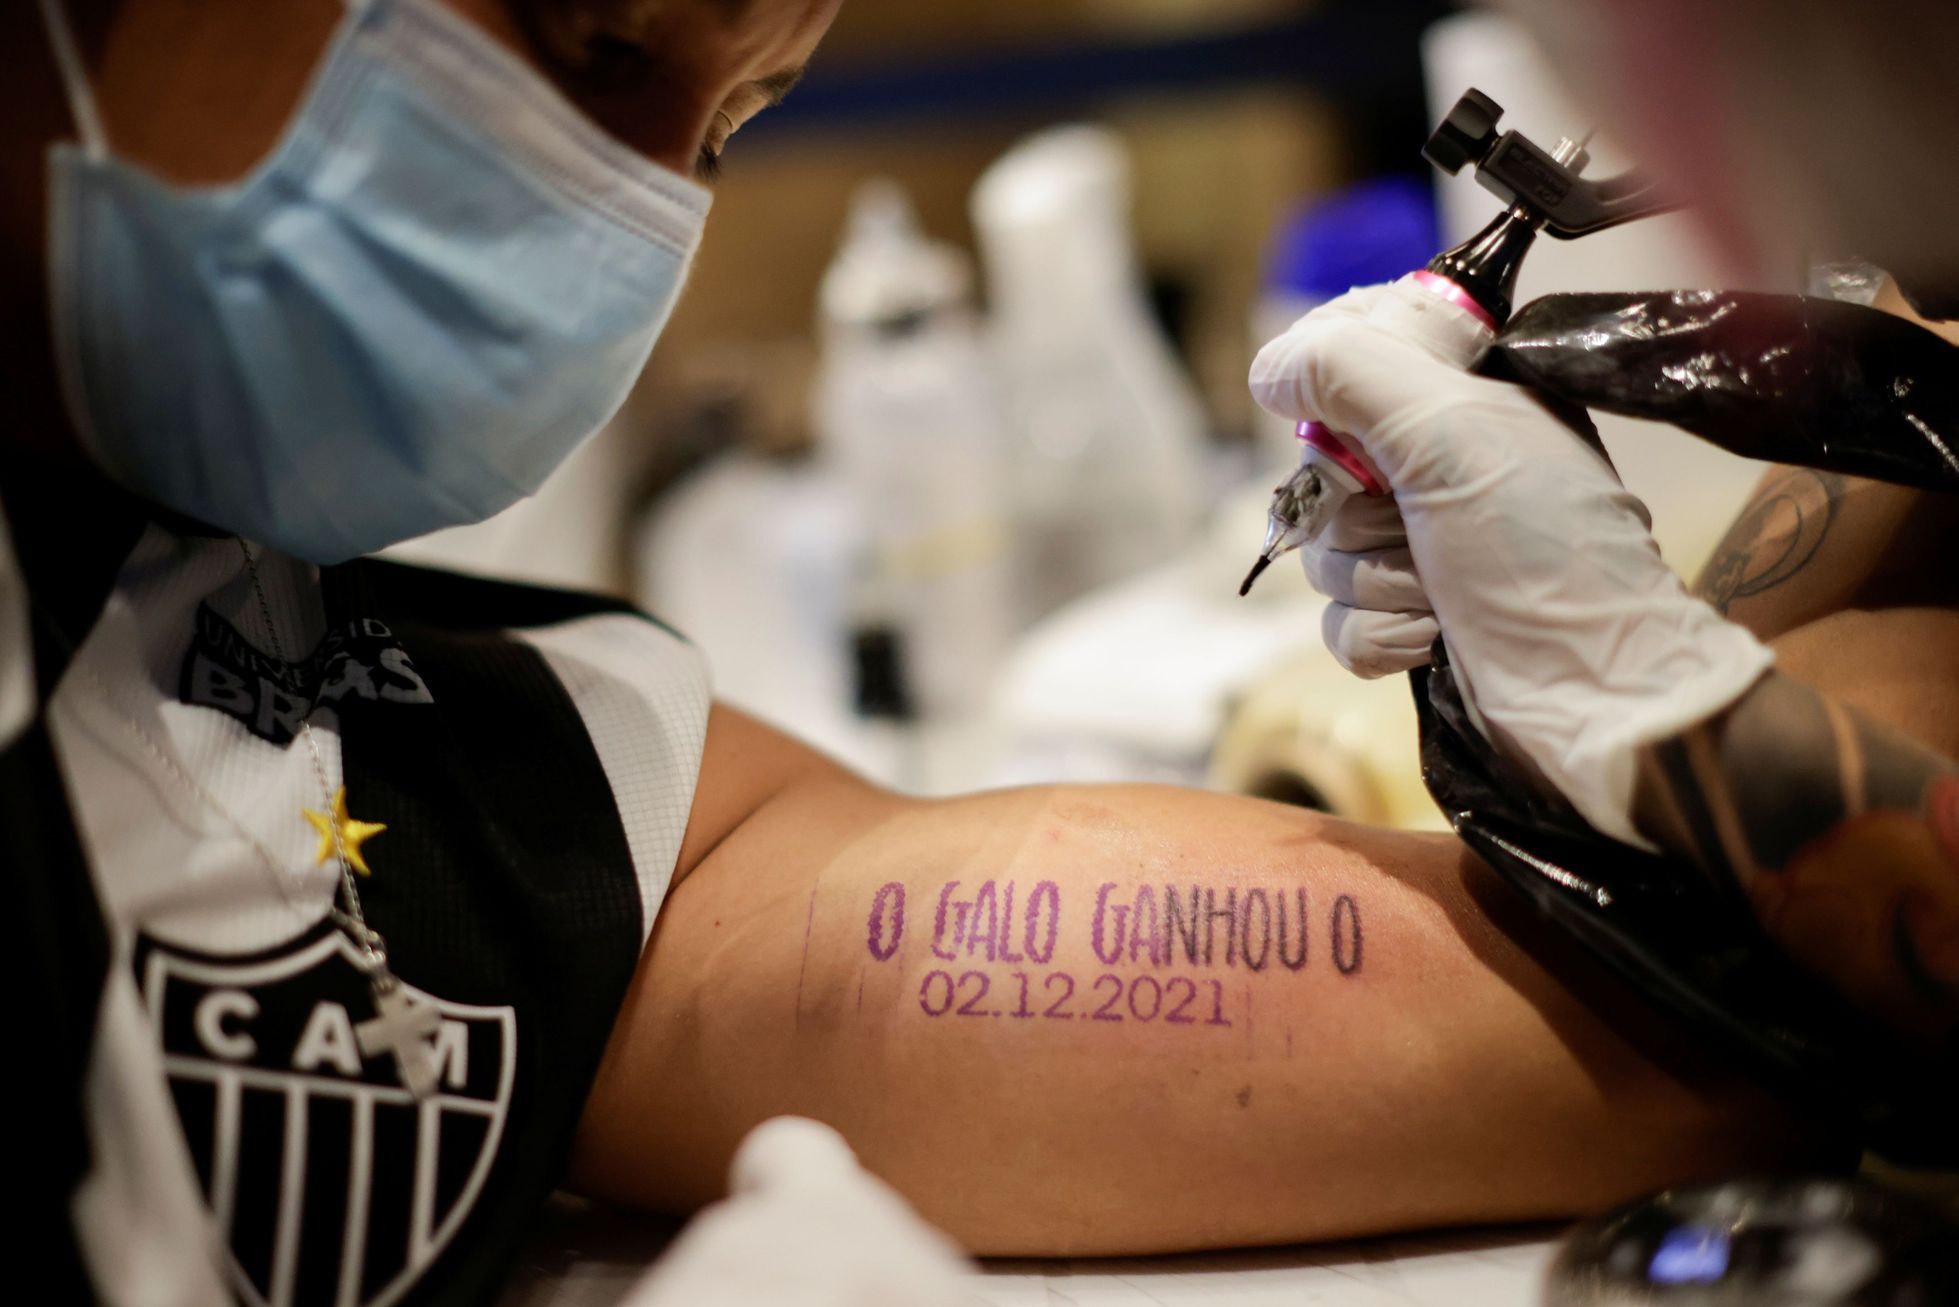 Atletico Mineiro vyhrálo brazilskou ligu a zaplatilo fanouškům tetování